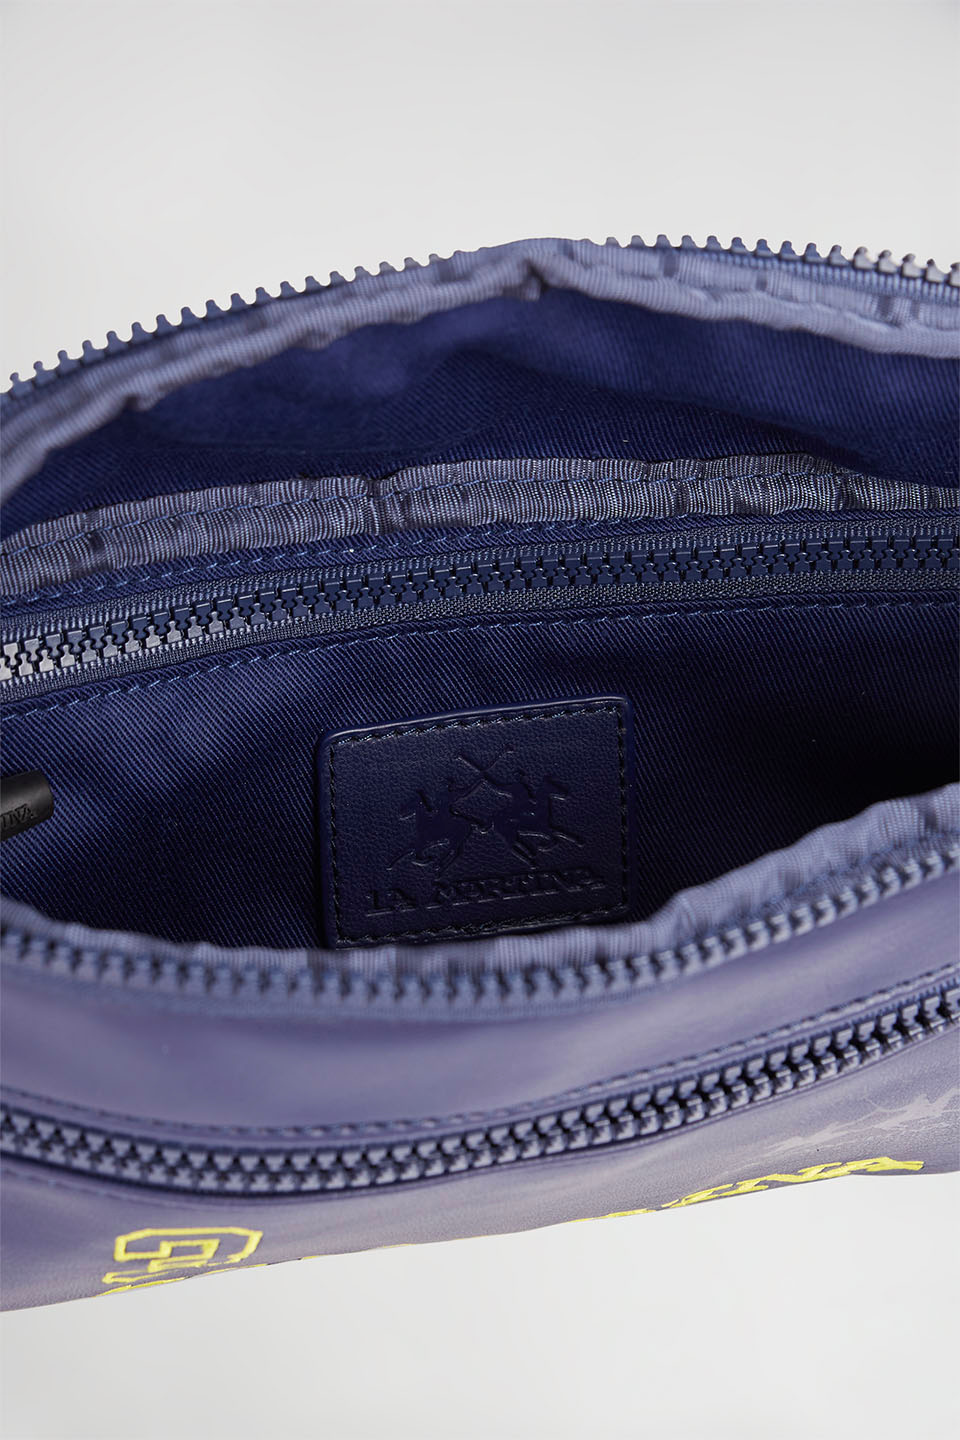 PU leather belt bag - La Martina - Official Online Shop